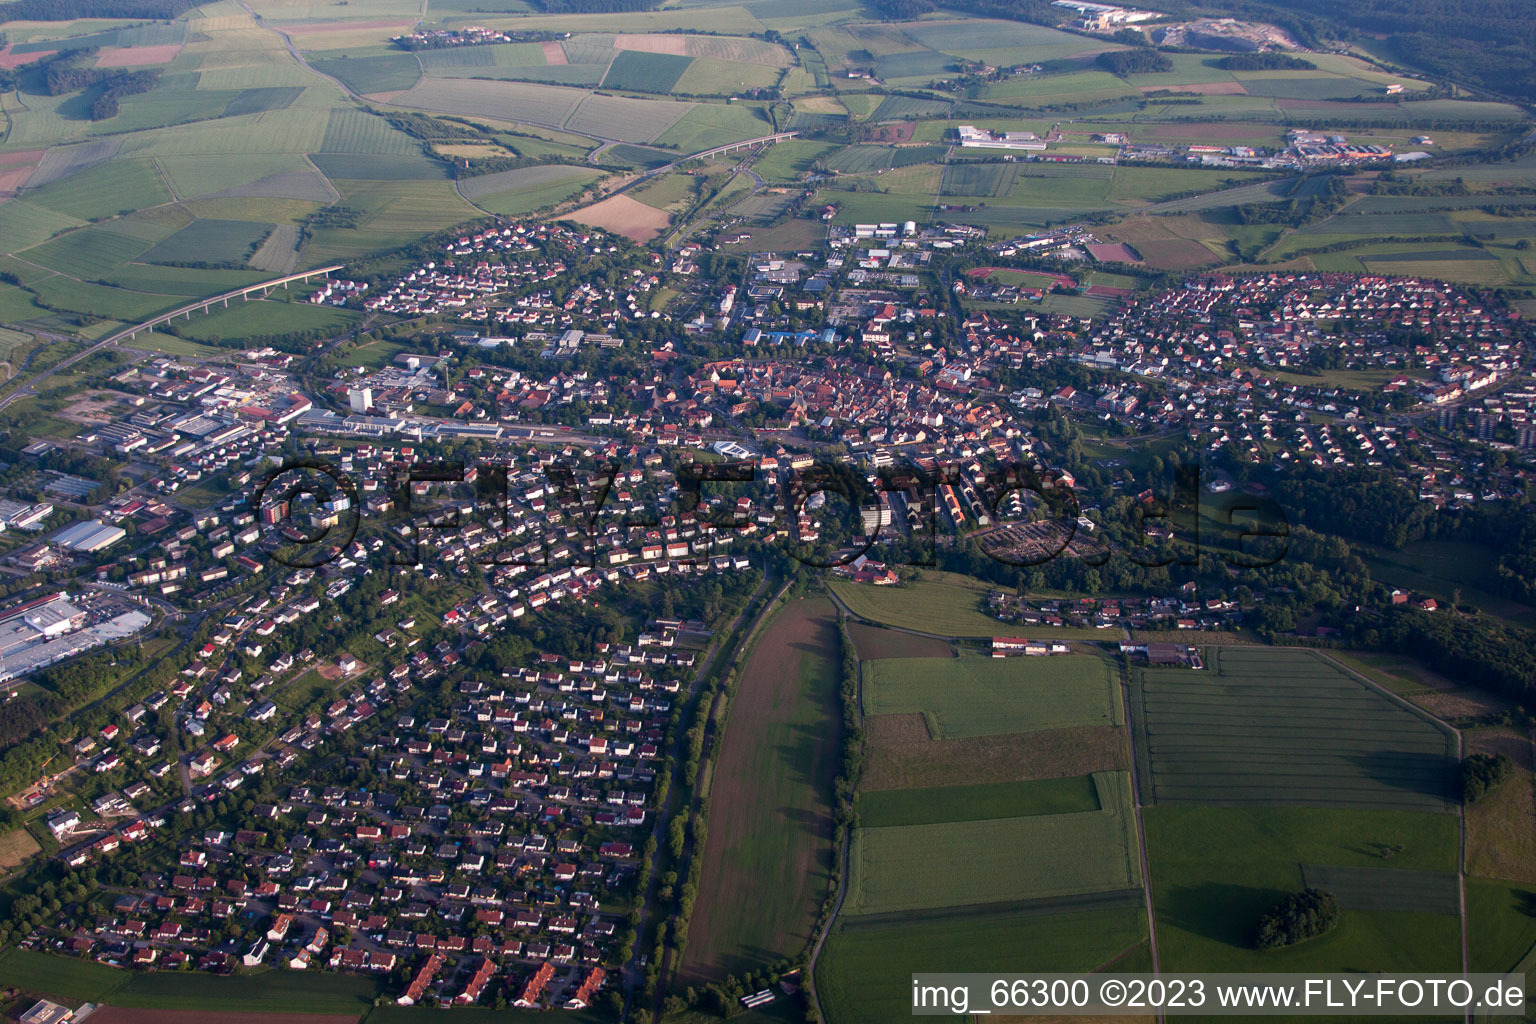 Vue des rues et des maisons des quartiers résidentiels à Buchen dans le département Bade-Wurtemberg, Allemagne d'en haut